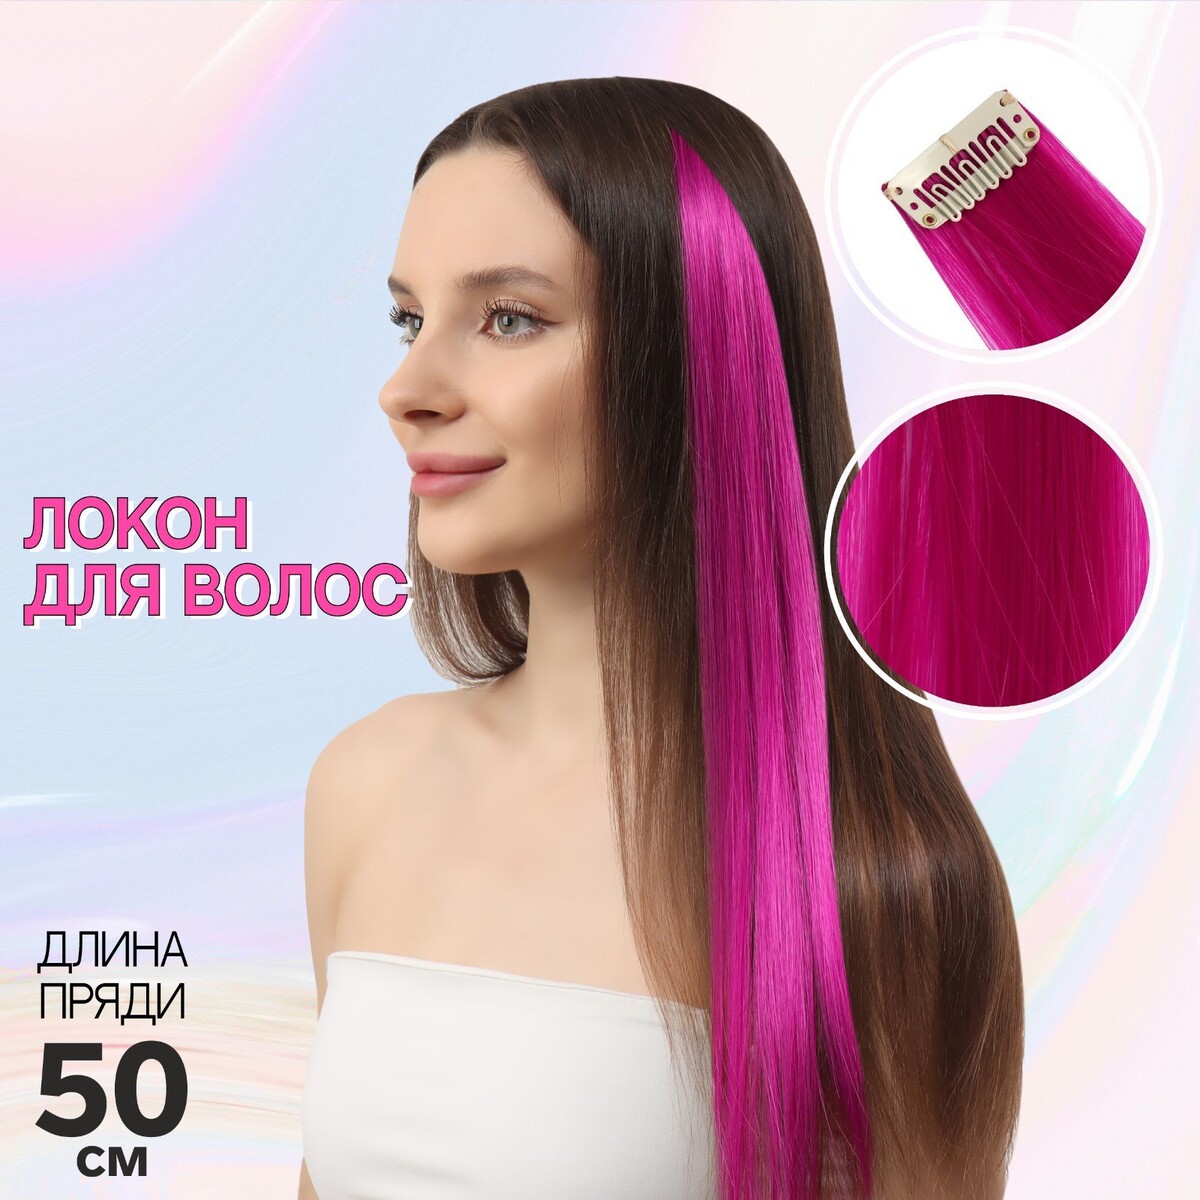 Локон накладной, прямой волос, на заколке, 50 см, 5 гр, цвет фиолетовый мелки для волос милая леди энчантималс фиолетовый 52820 ens